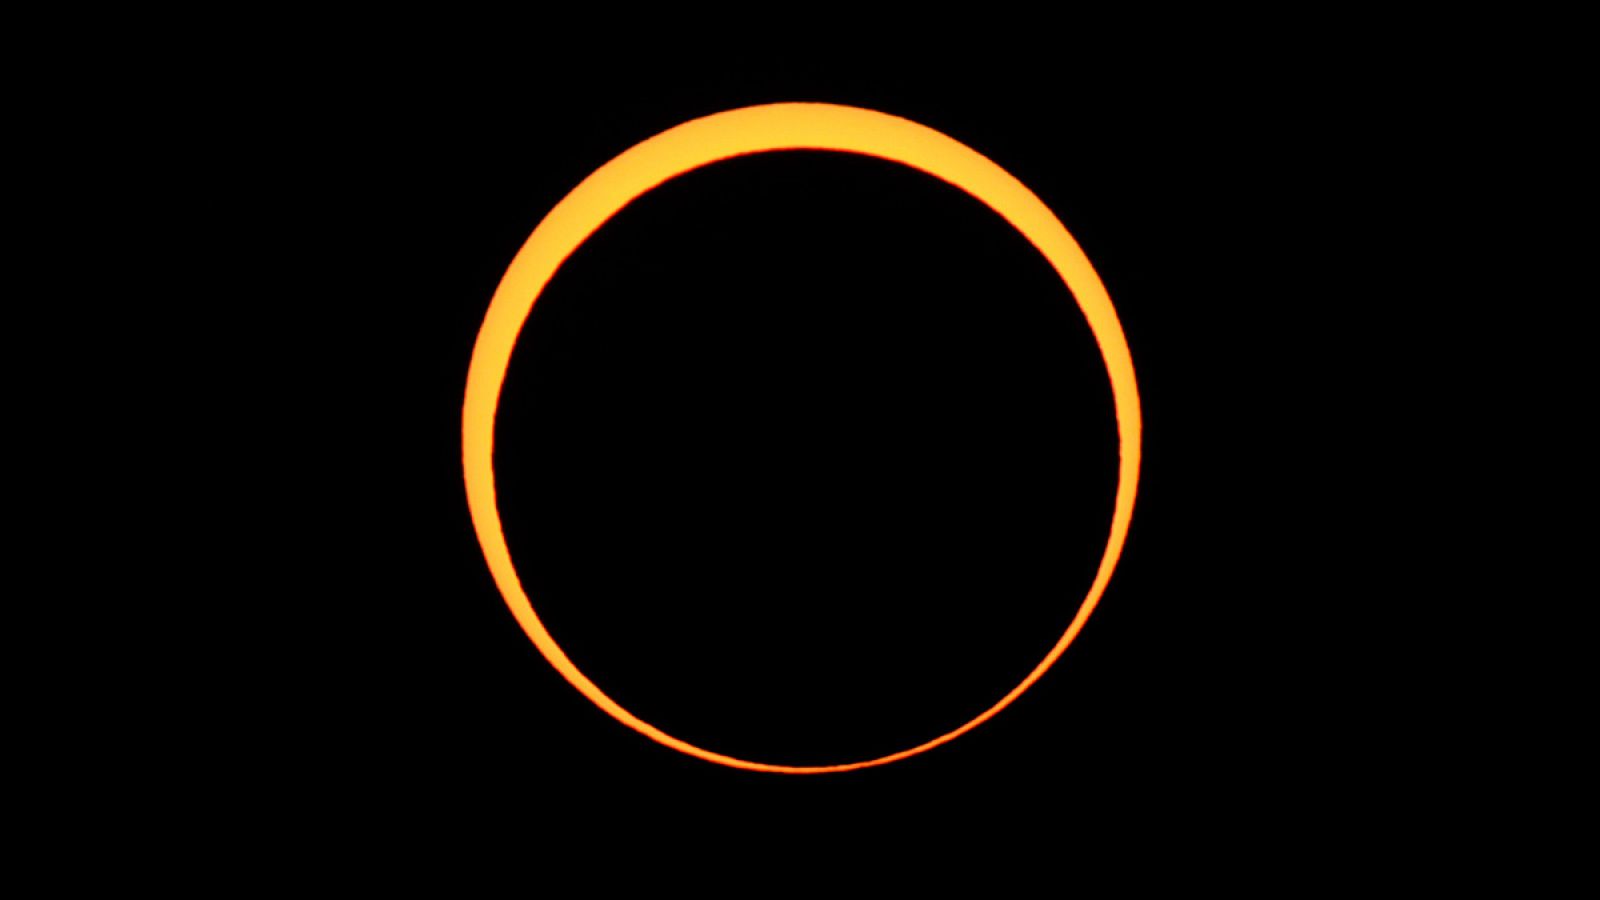 Septiembre comienza con un eclipse anular de sol, visible en Canarias